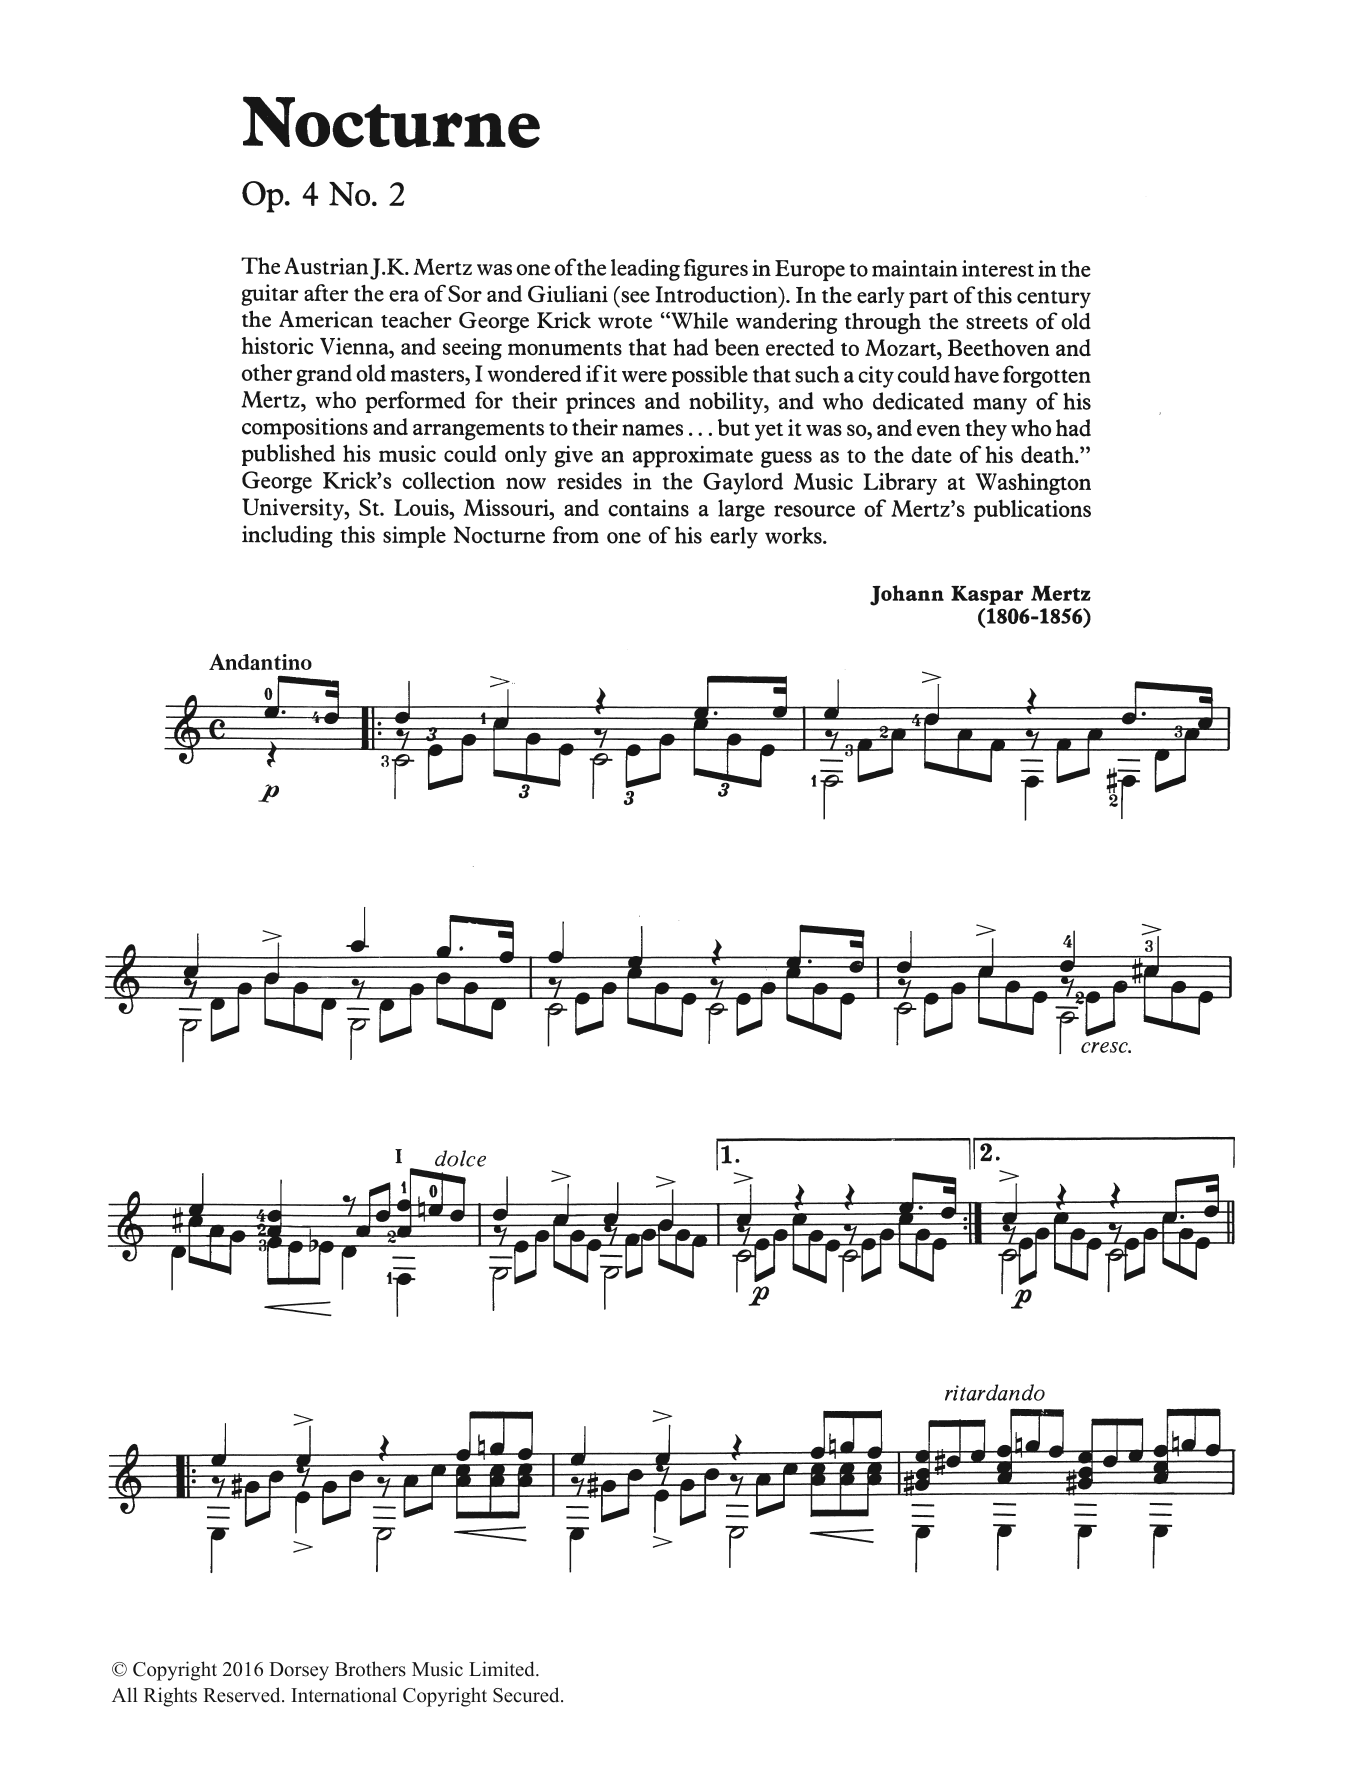 Johann Kaspar Mertz Nocturne Sheet Music Notes & Chords for Guitar - Download or Print PDF